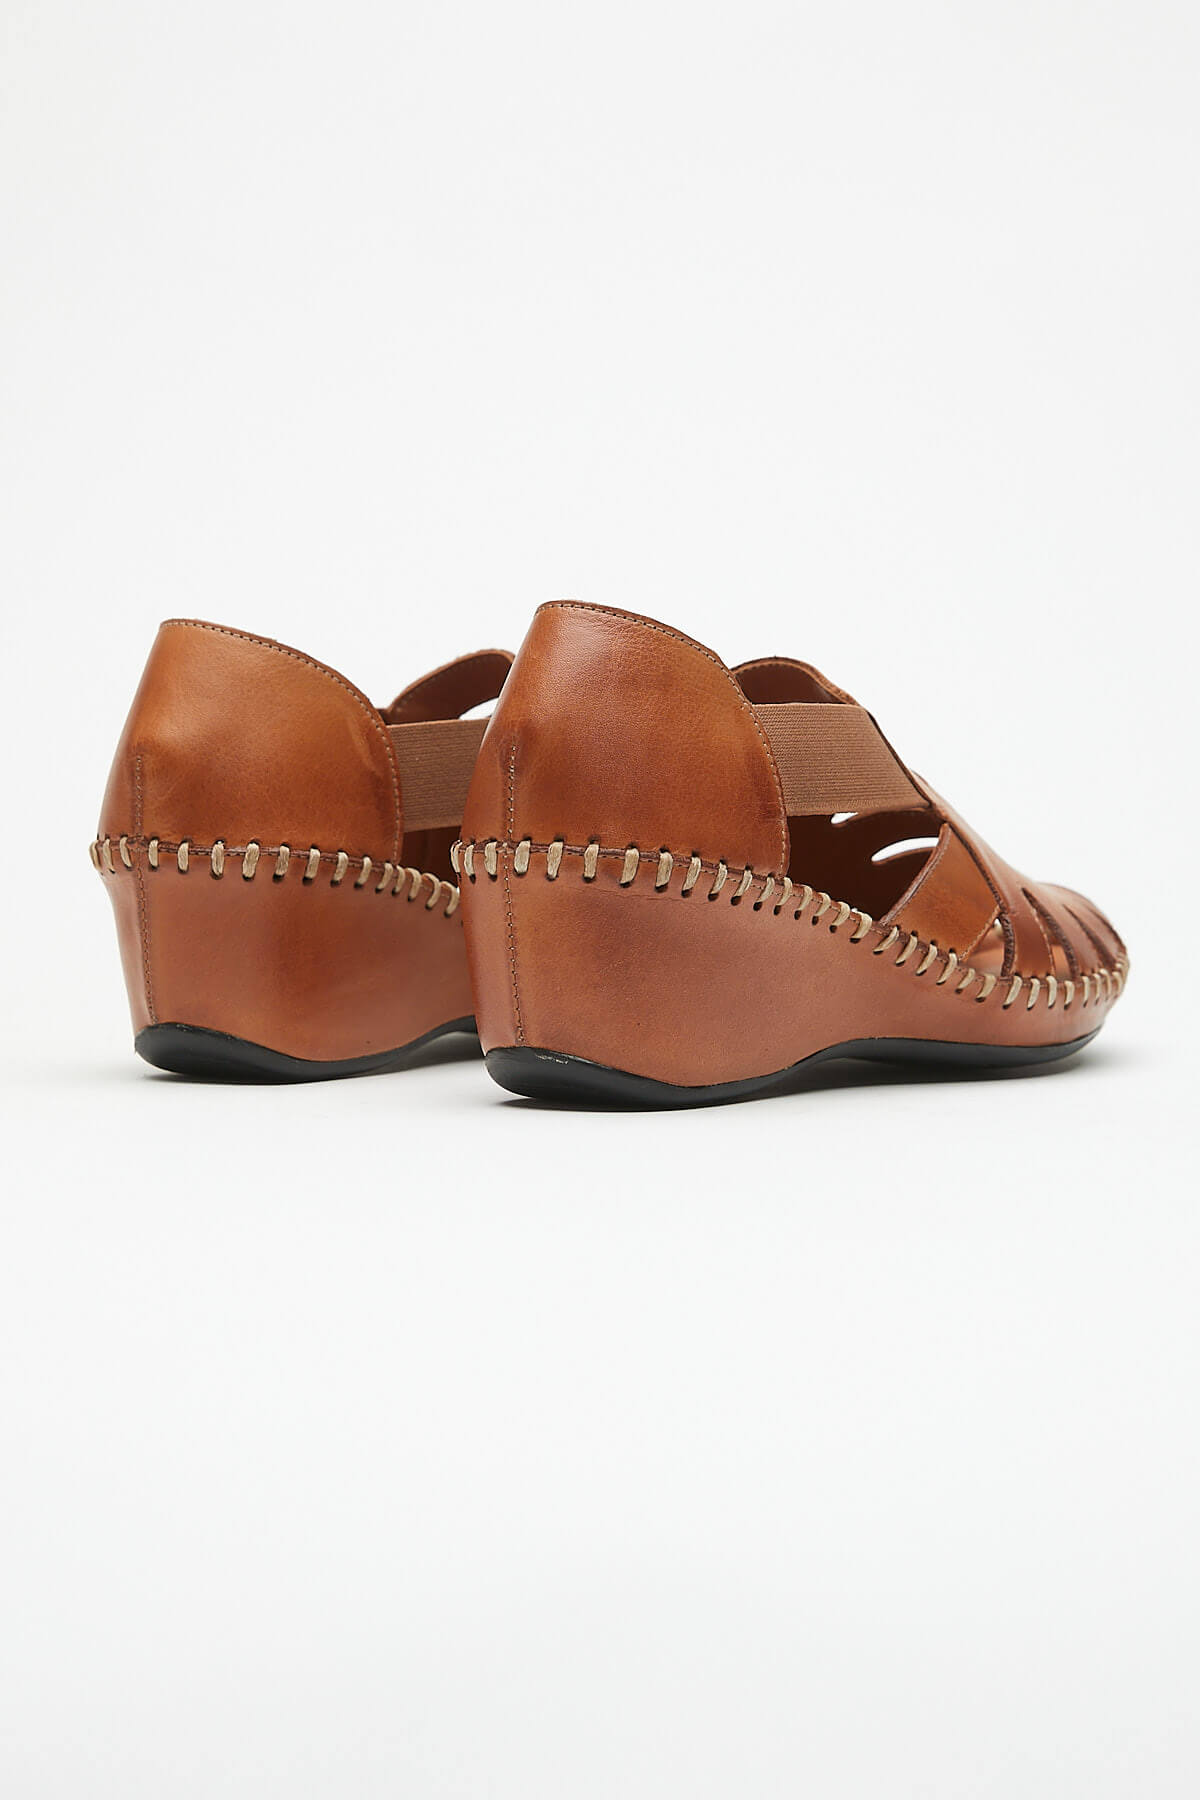 Kadın Comfort Deri Sandalet Taba 21793070 - Thumbnail